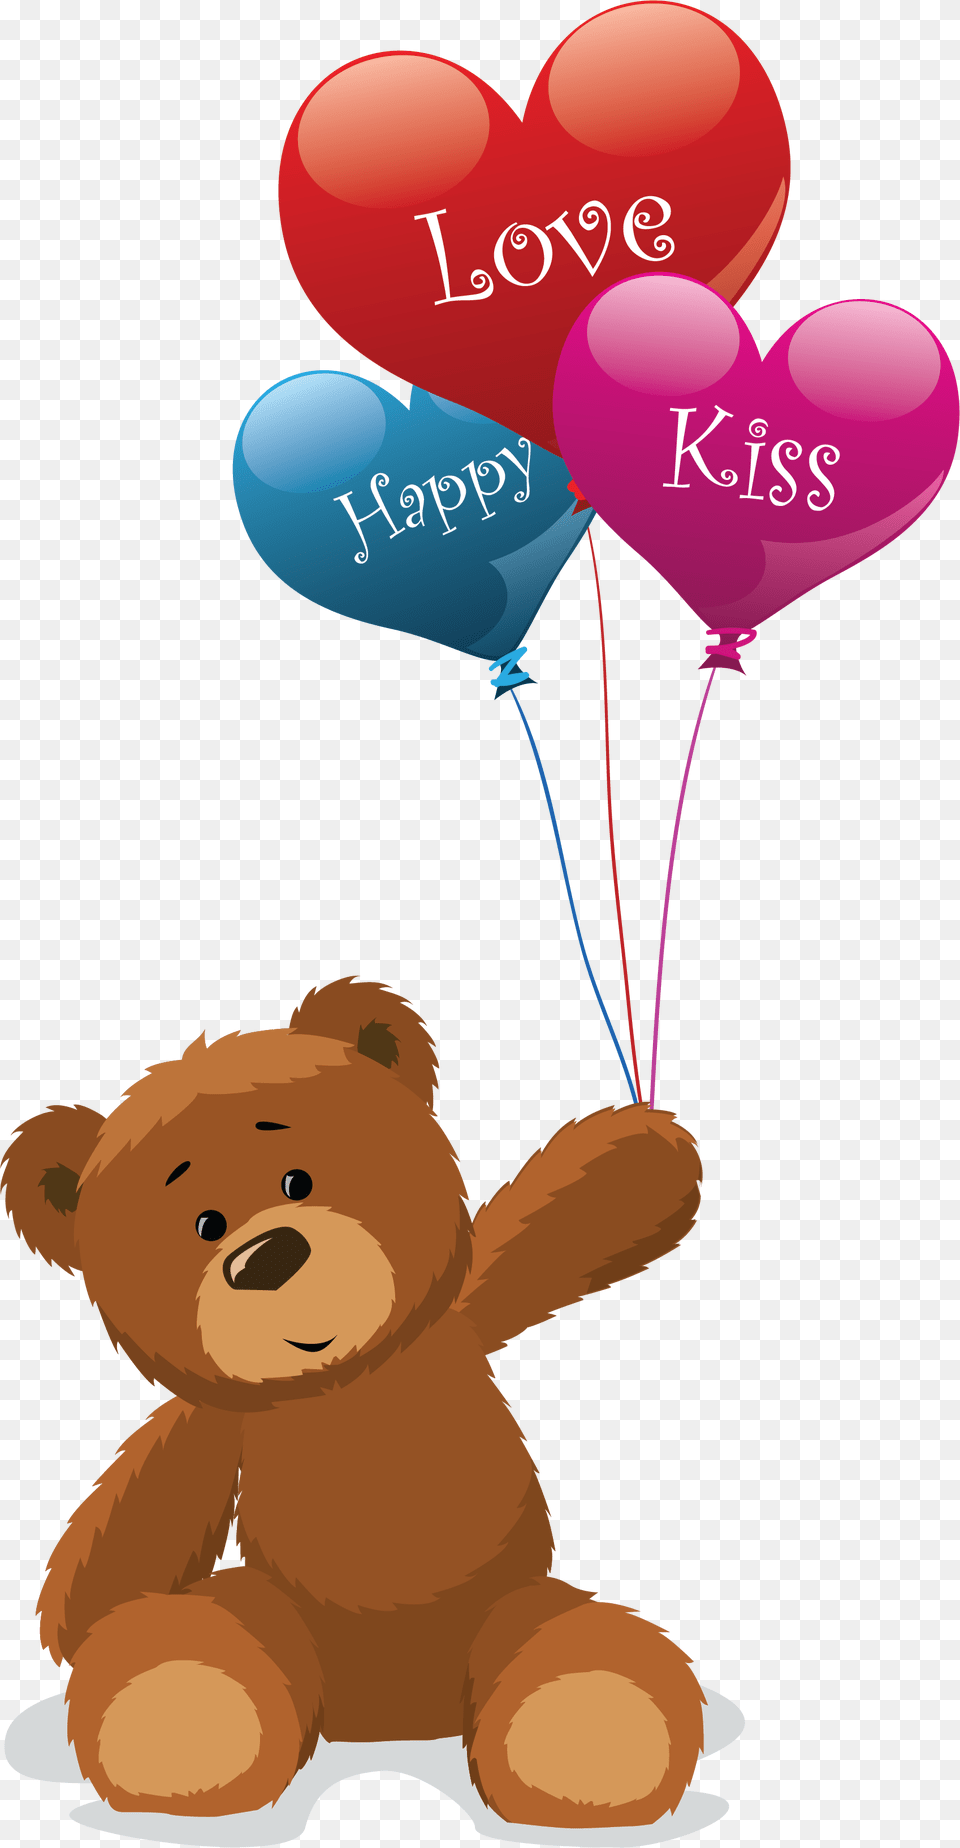 Teddy Bear Vector, Balloon, Toy, Teddy Bear Free Png